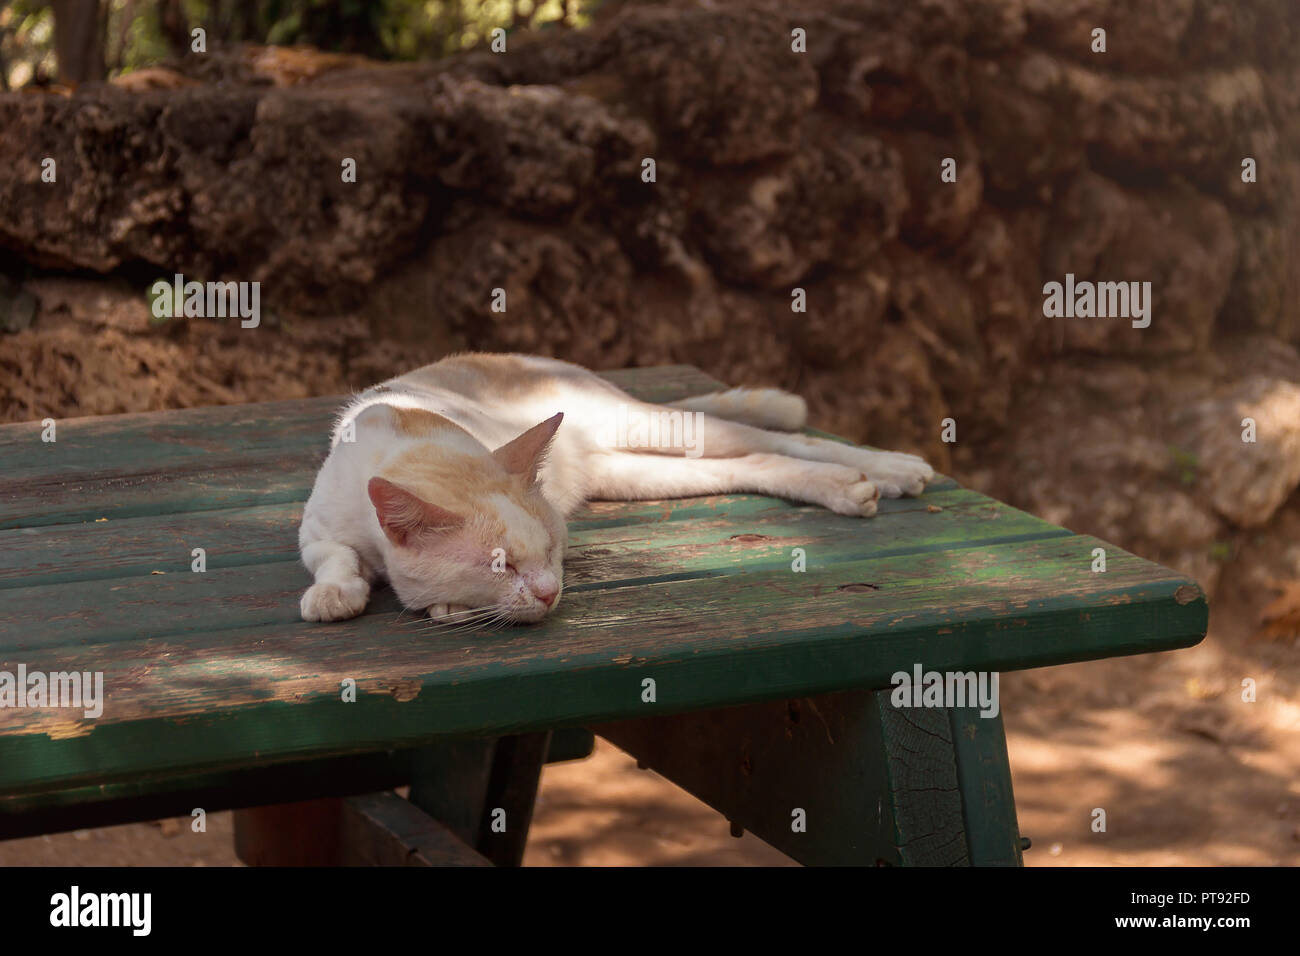 Un chat domestique est de jeter sur la vieille table en bois. Un animal dans la nature. Le village, le parc Banque D'Images